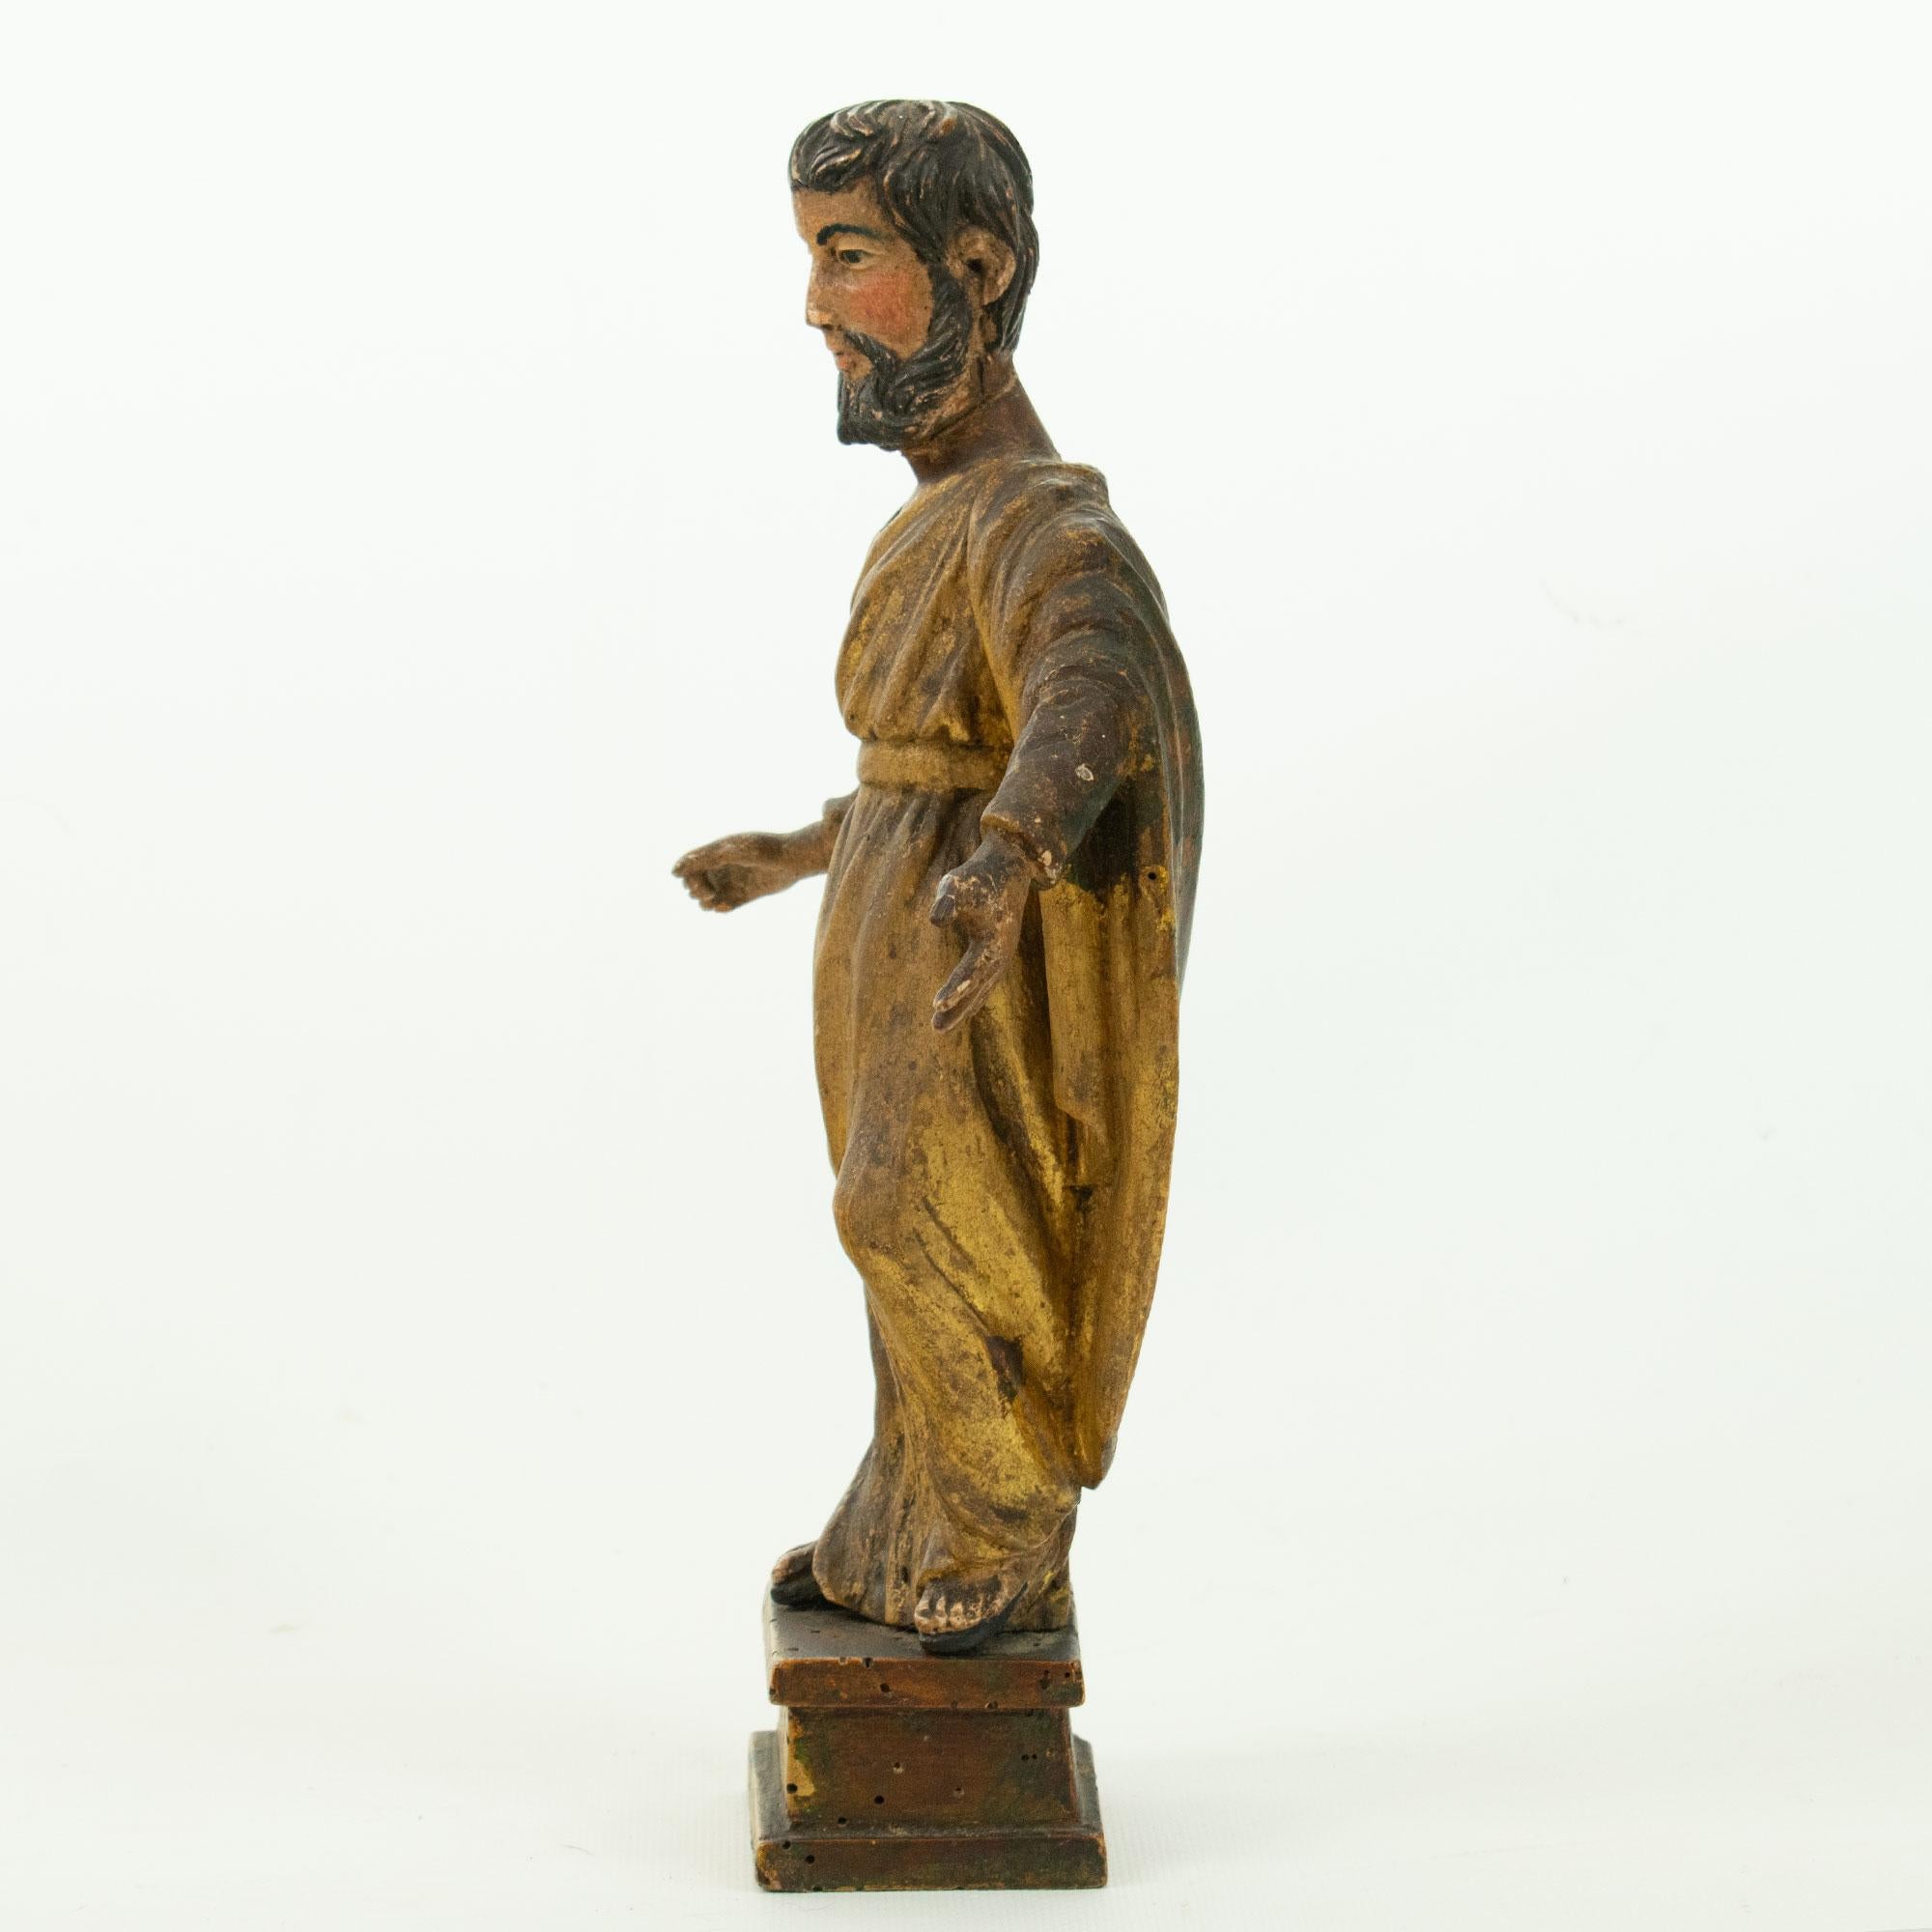 SAINT PAUL: Statuette aus geschnitztem und vergoldetem polychromem Holz,
Ende des 18. Jahrhunderts.  Der Heilige Paulus, auch bekannt als Apostel Paulus, war eine wichtige Figur des frühen Christentums und wird häufig in verschiedenen Formen